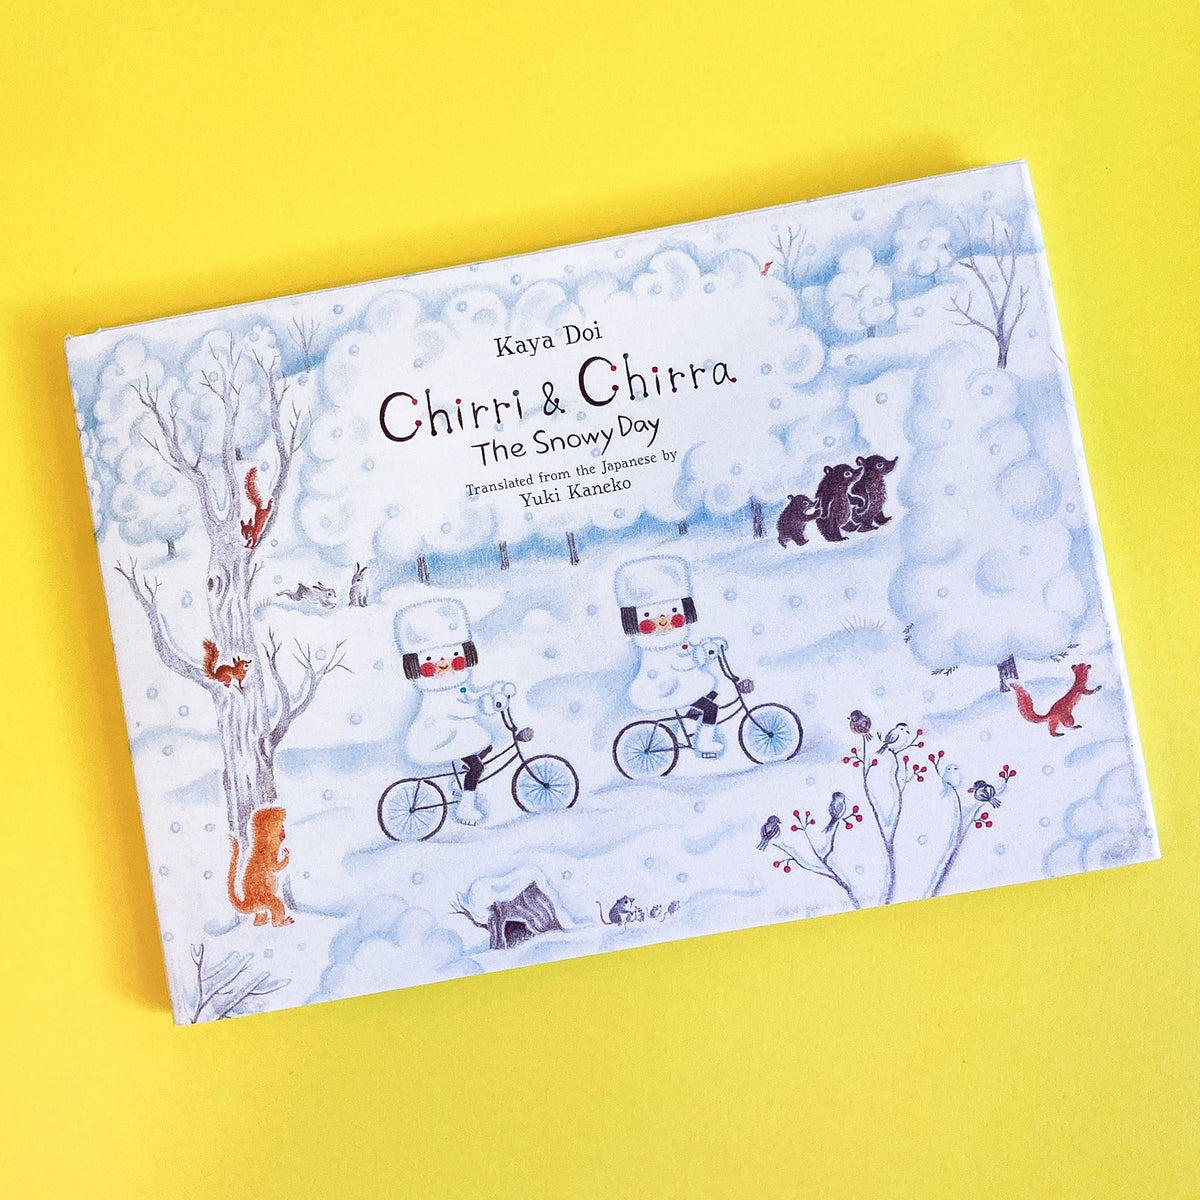 Chirri & Chirra by Kaya Doi